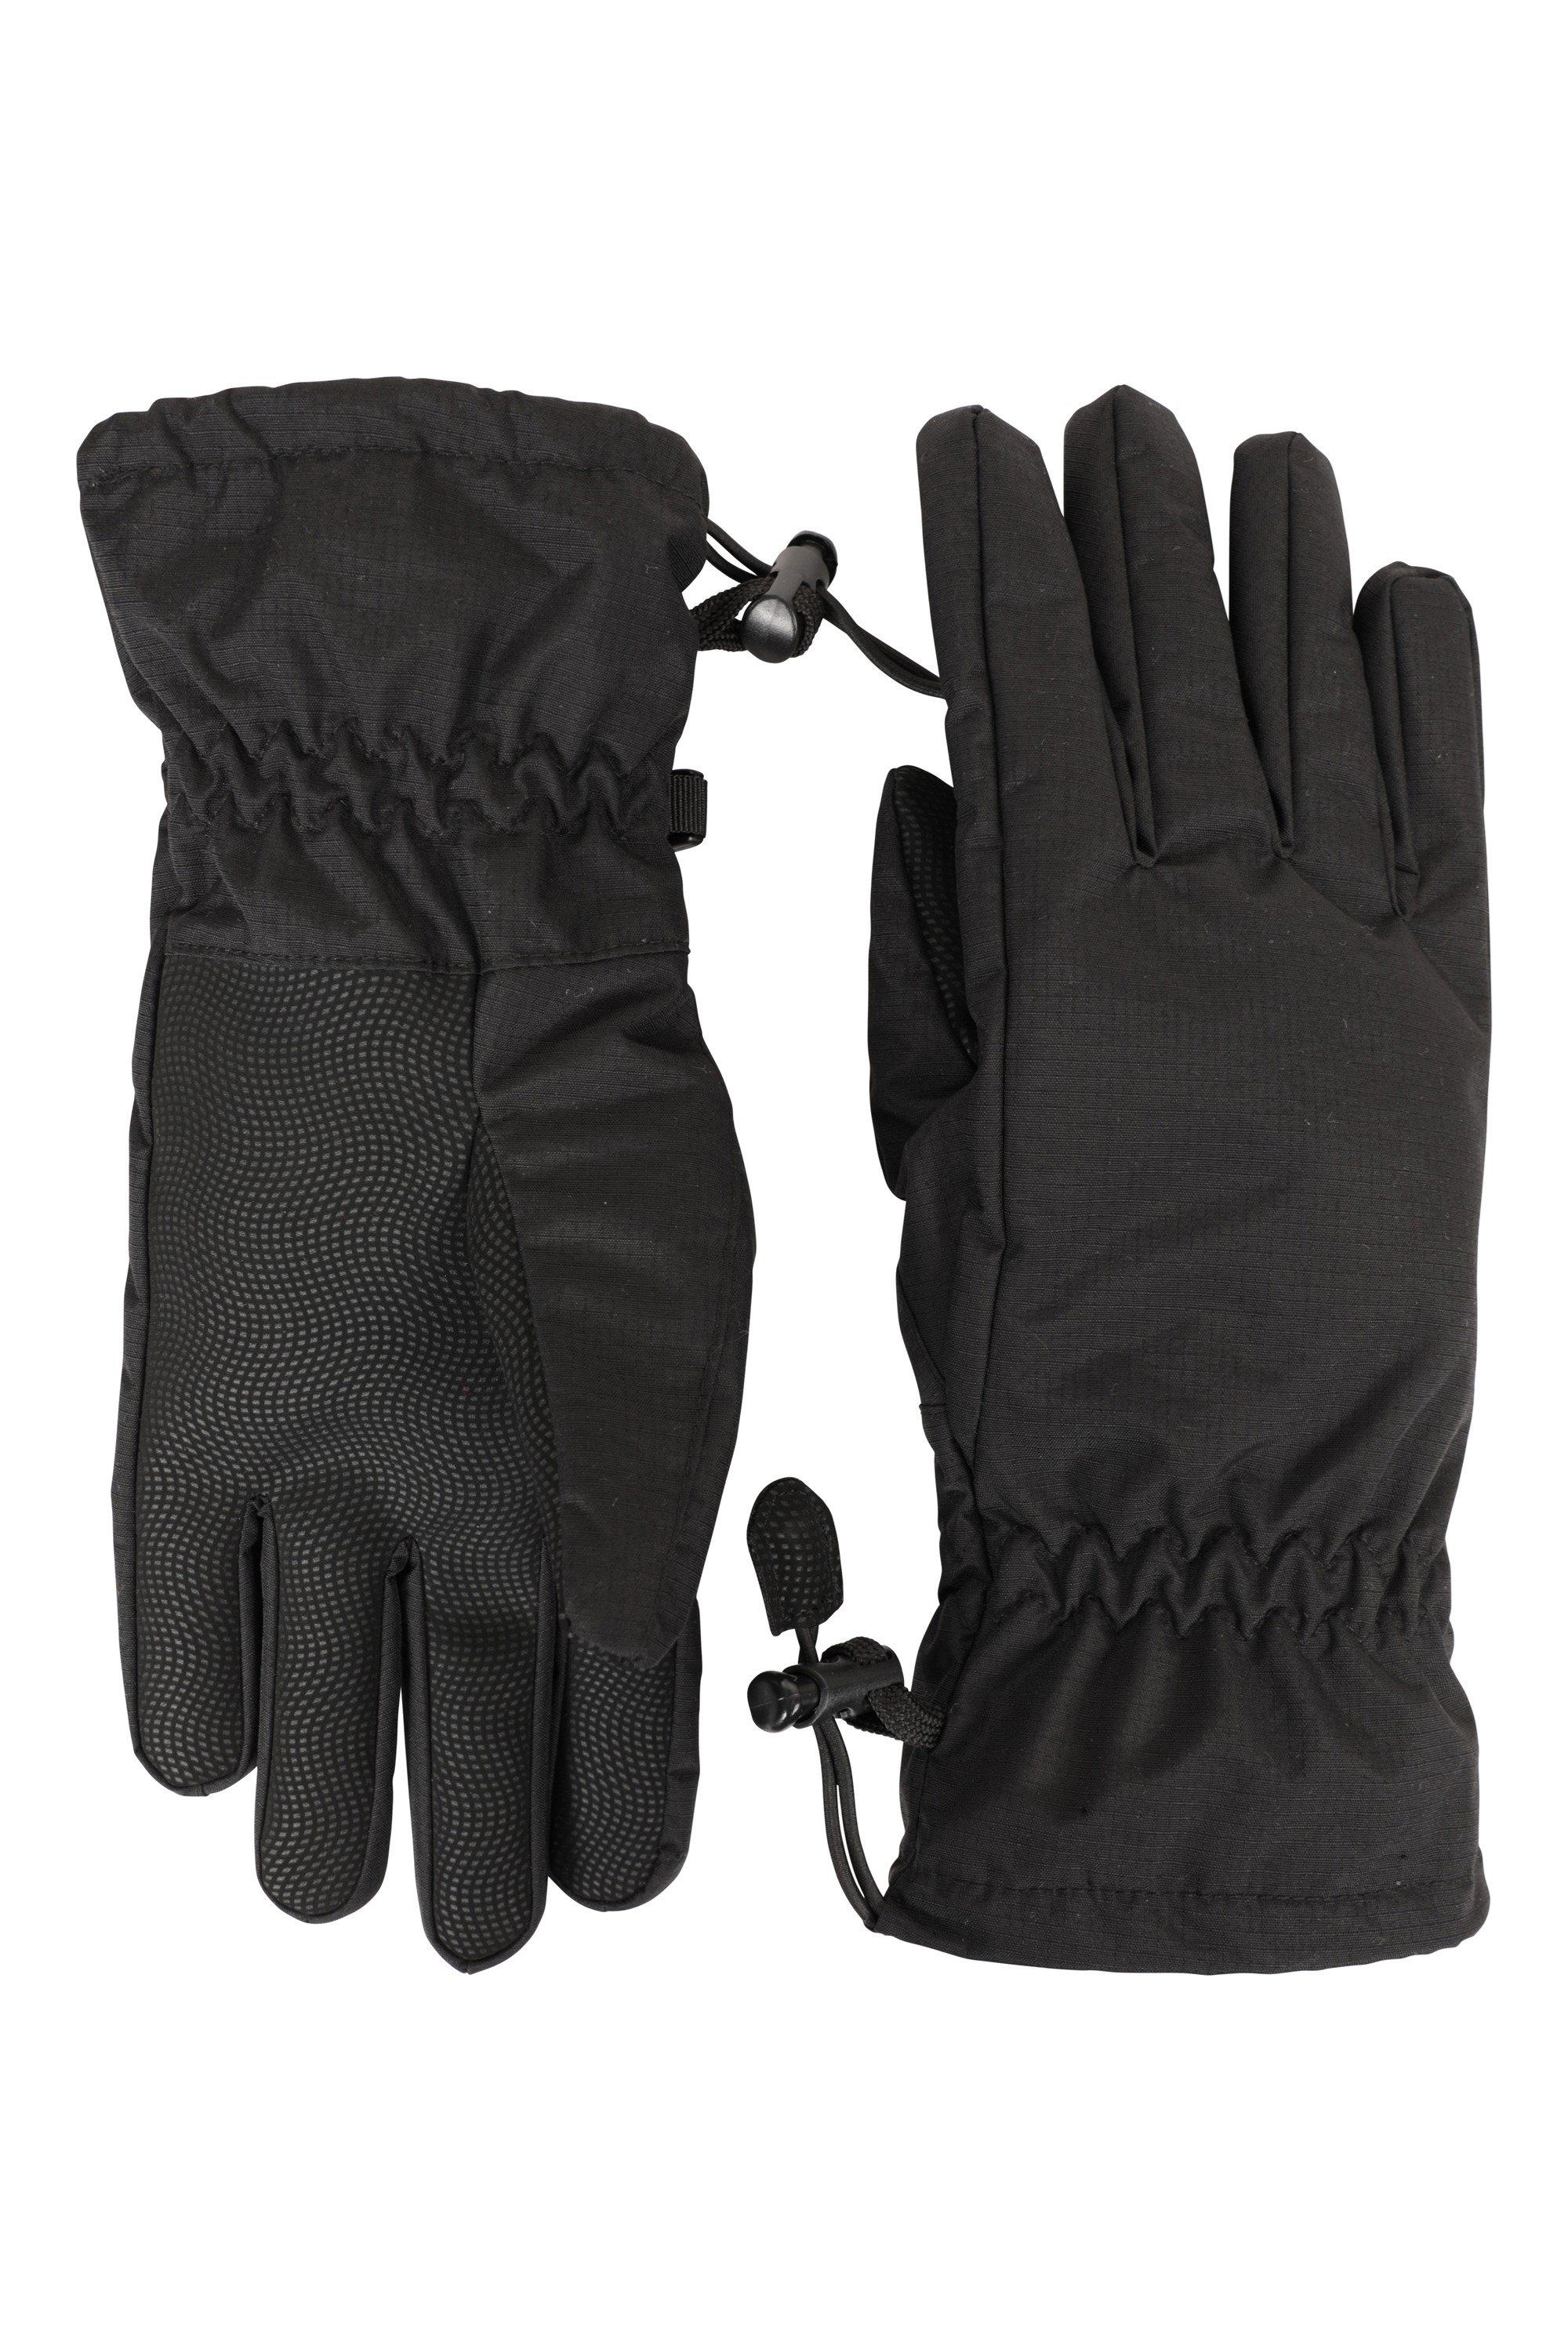 Классические перчатки, водонепроницаемые зимние теплые перчатки Mountain Warehouse, черный единорог перчатка трикотажные зимние теплые мягкие перчатки mountain warehouse фиолетовый